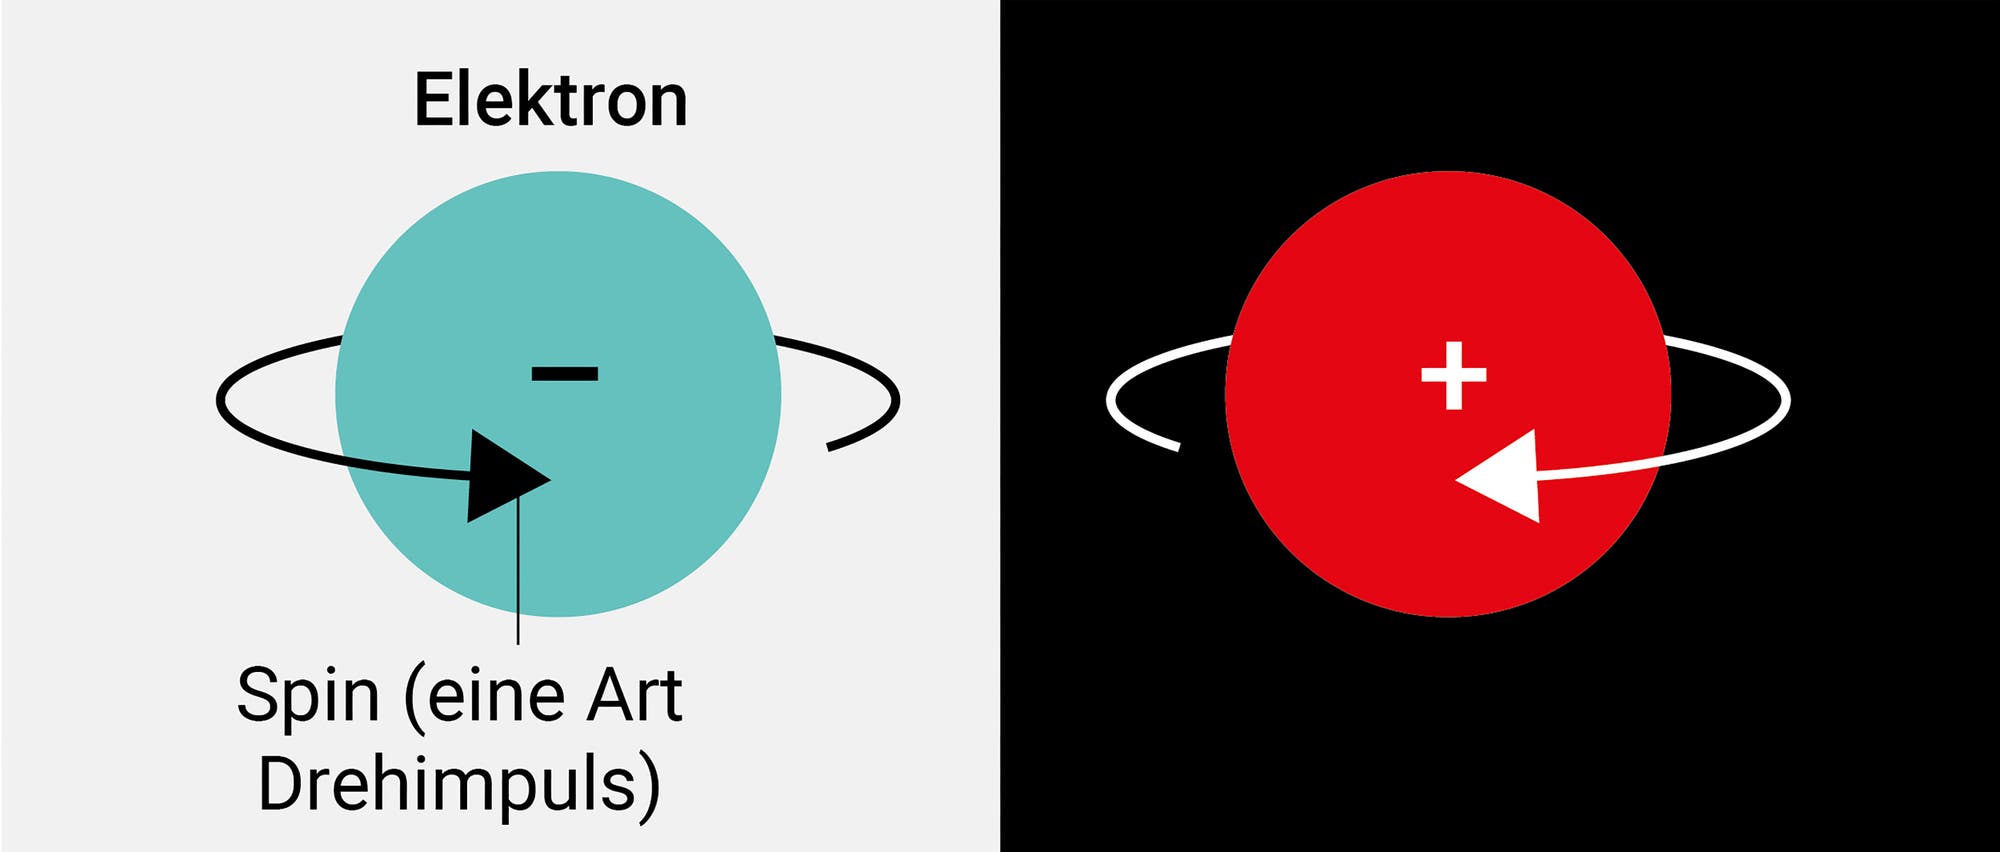 Illustration von Ladung und Spin in Elektron und Positron